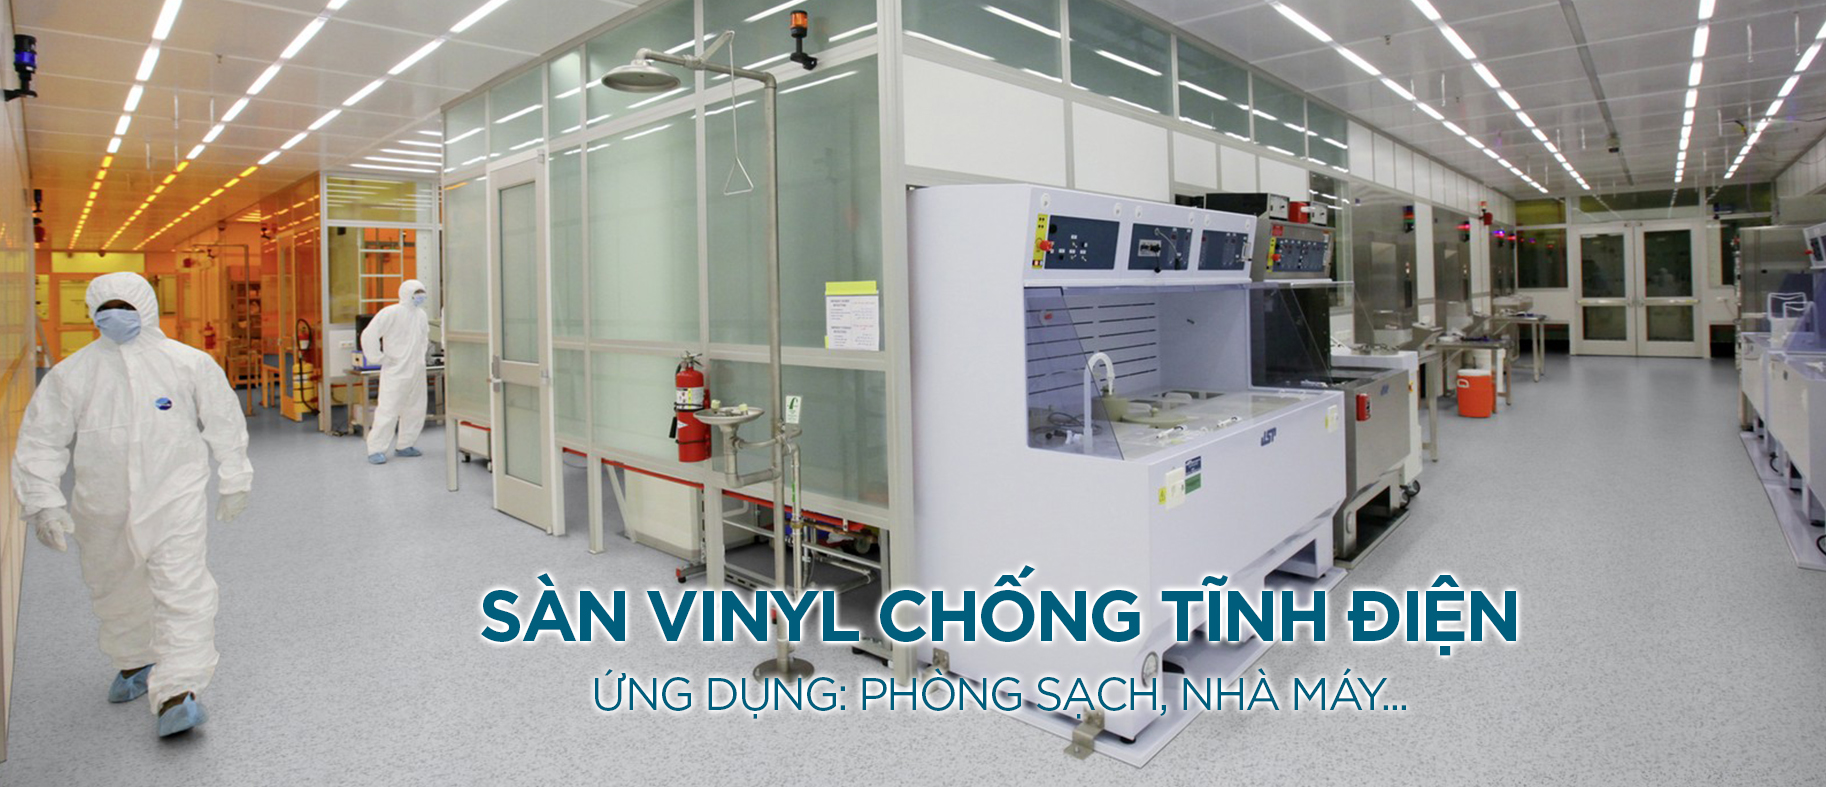 Sàn vinyl chống tĩnh điện - Giải pháp an toàn cho các khu vực sản xuất, nghiên cứu